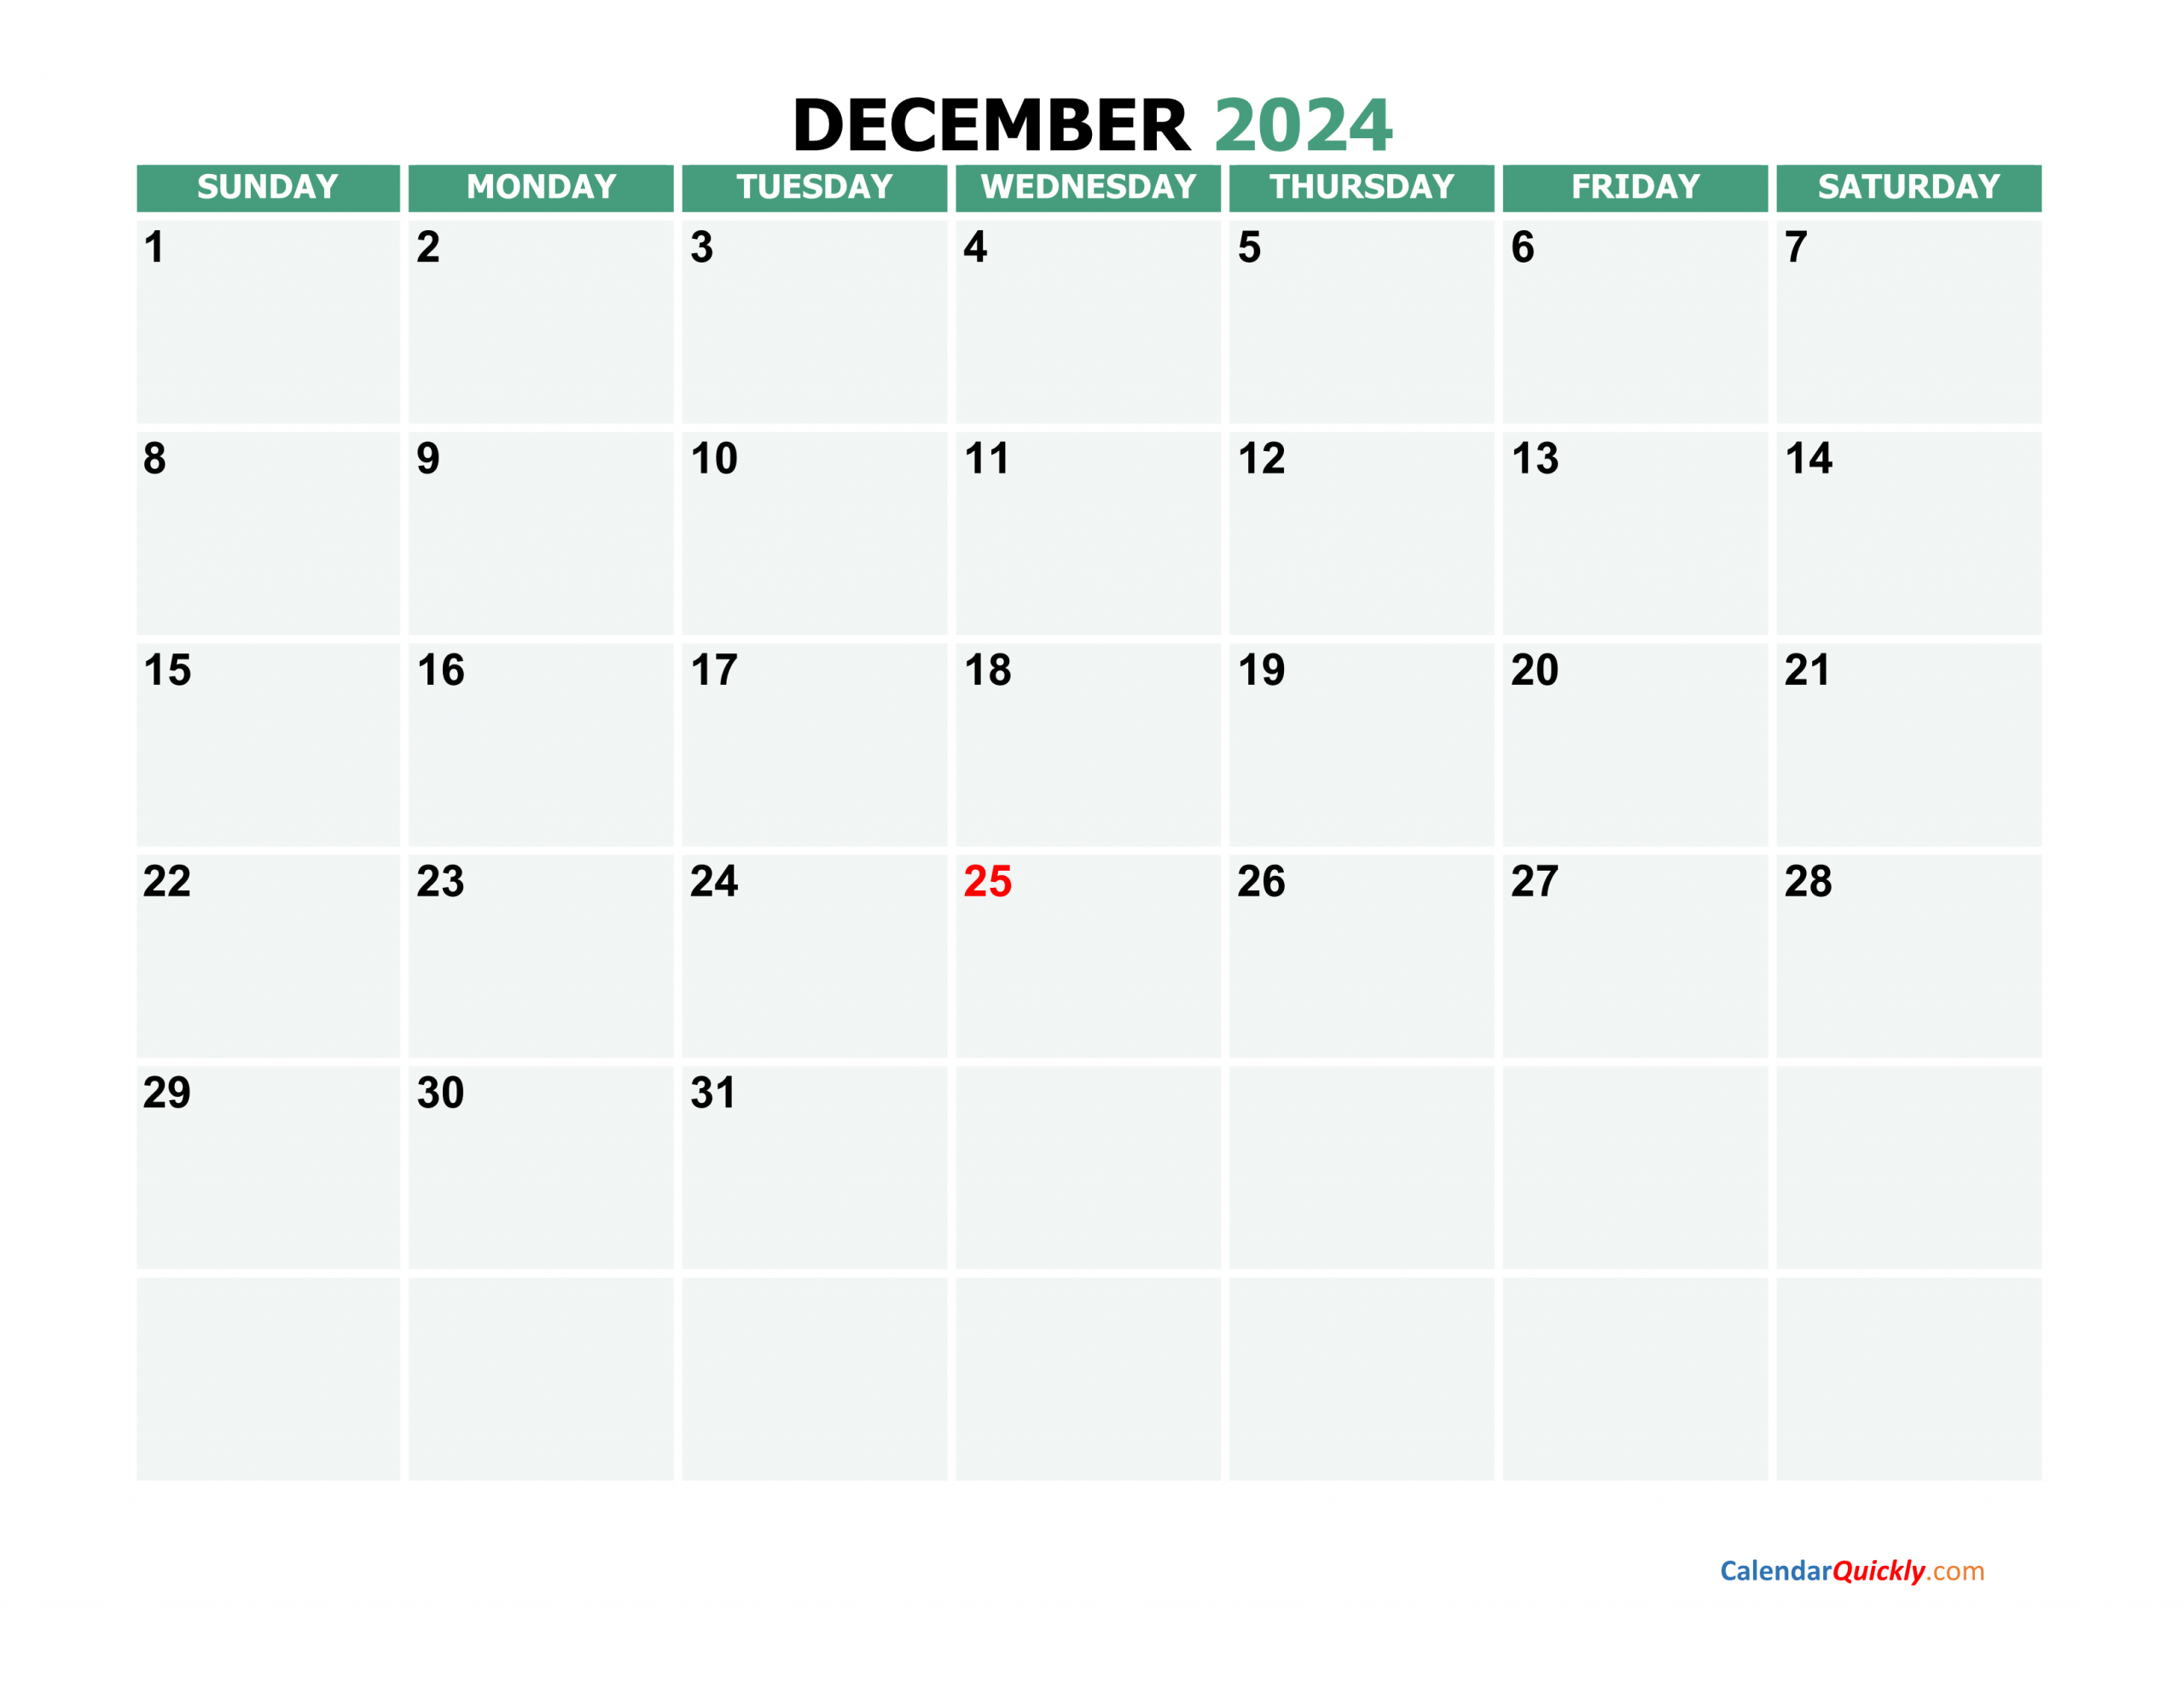 December 2024 Printable Calendar | Calendar Quickly